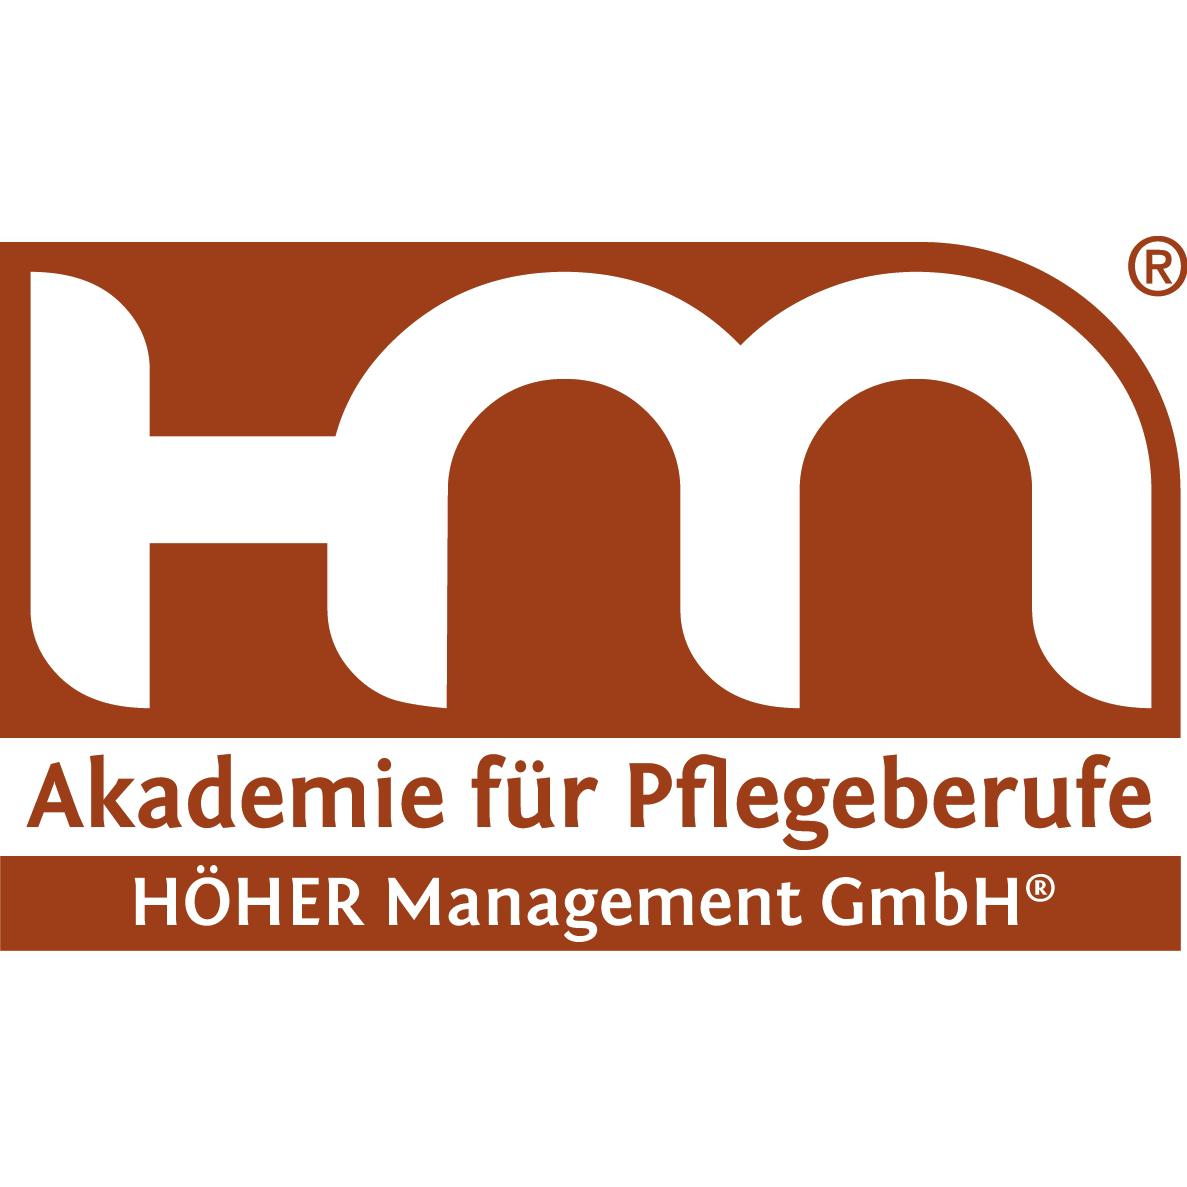 Logo von HÖHER Management GmbH & Co. KG.